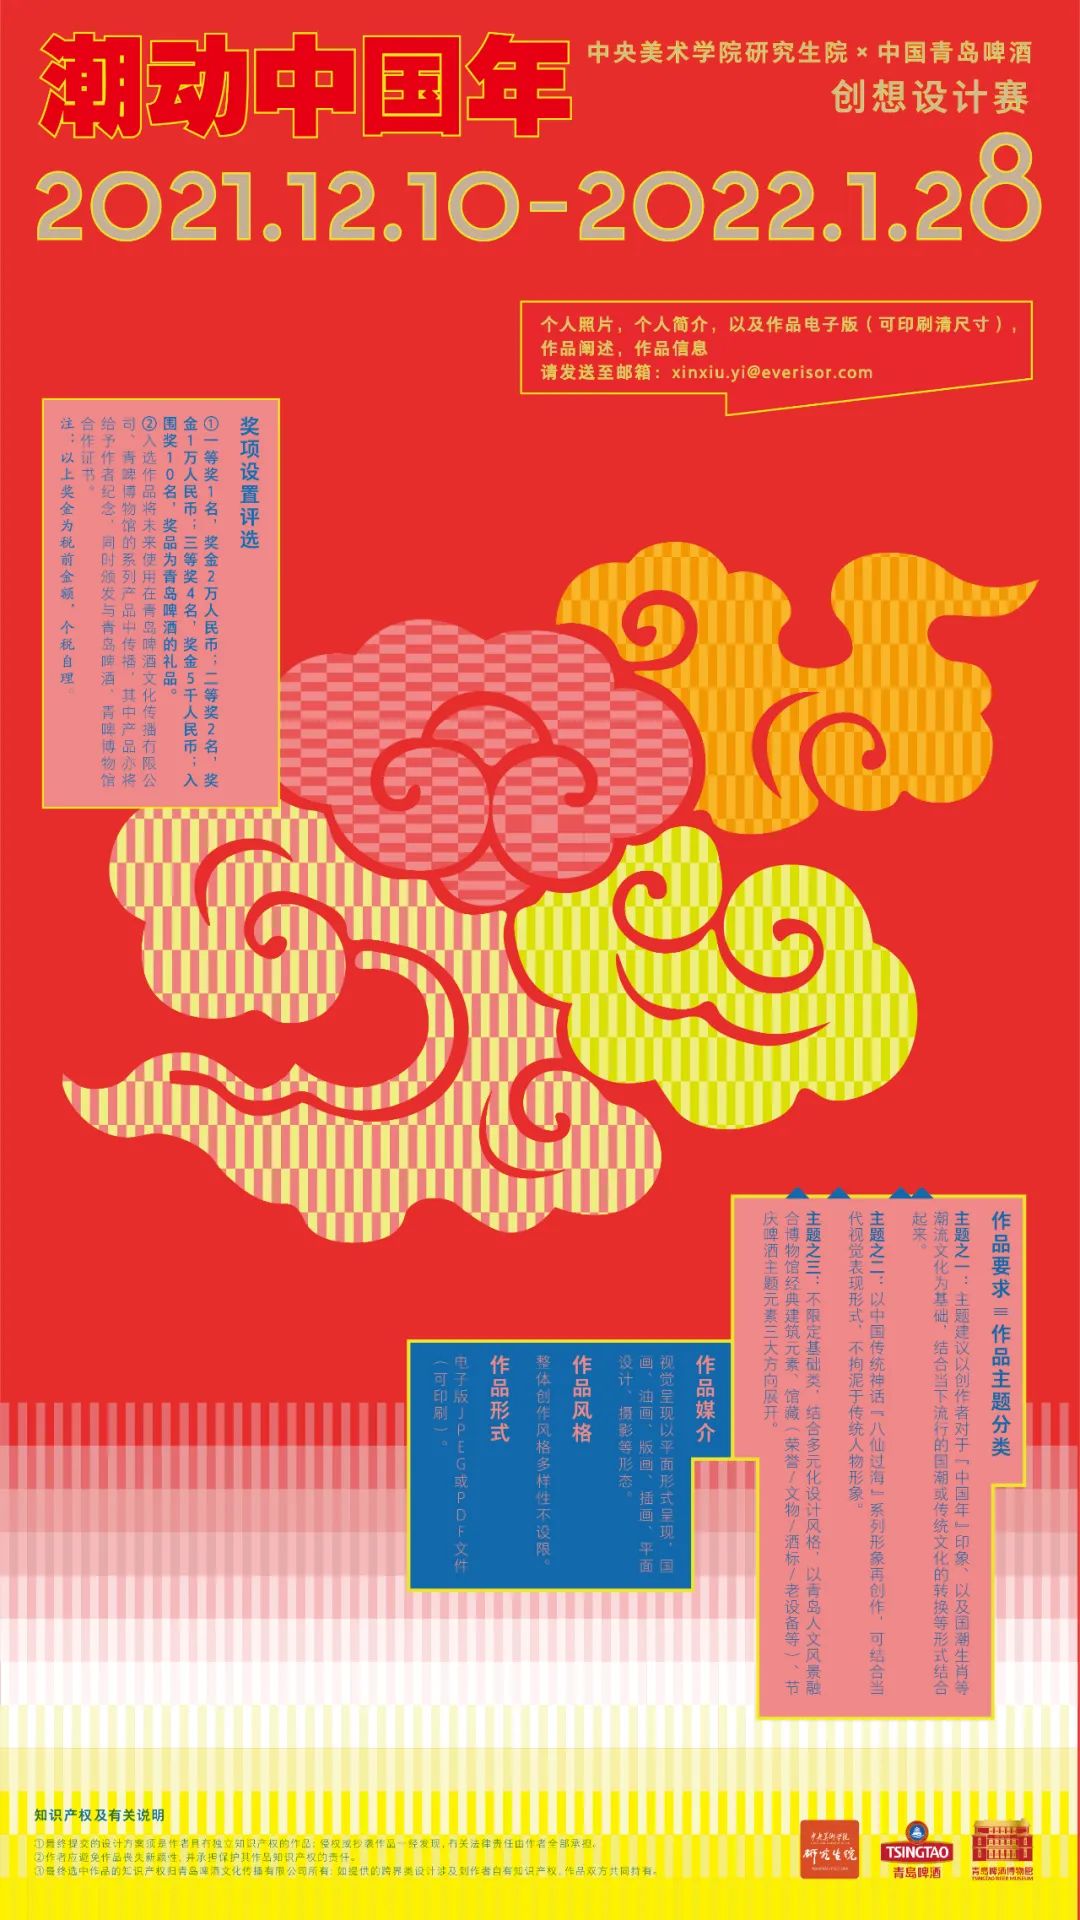 中央美術學院 X 青島啤酒2022潮動中國年創想設計賽